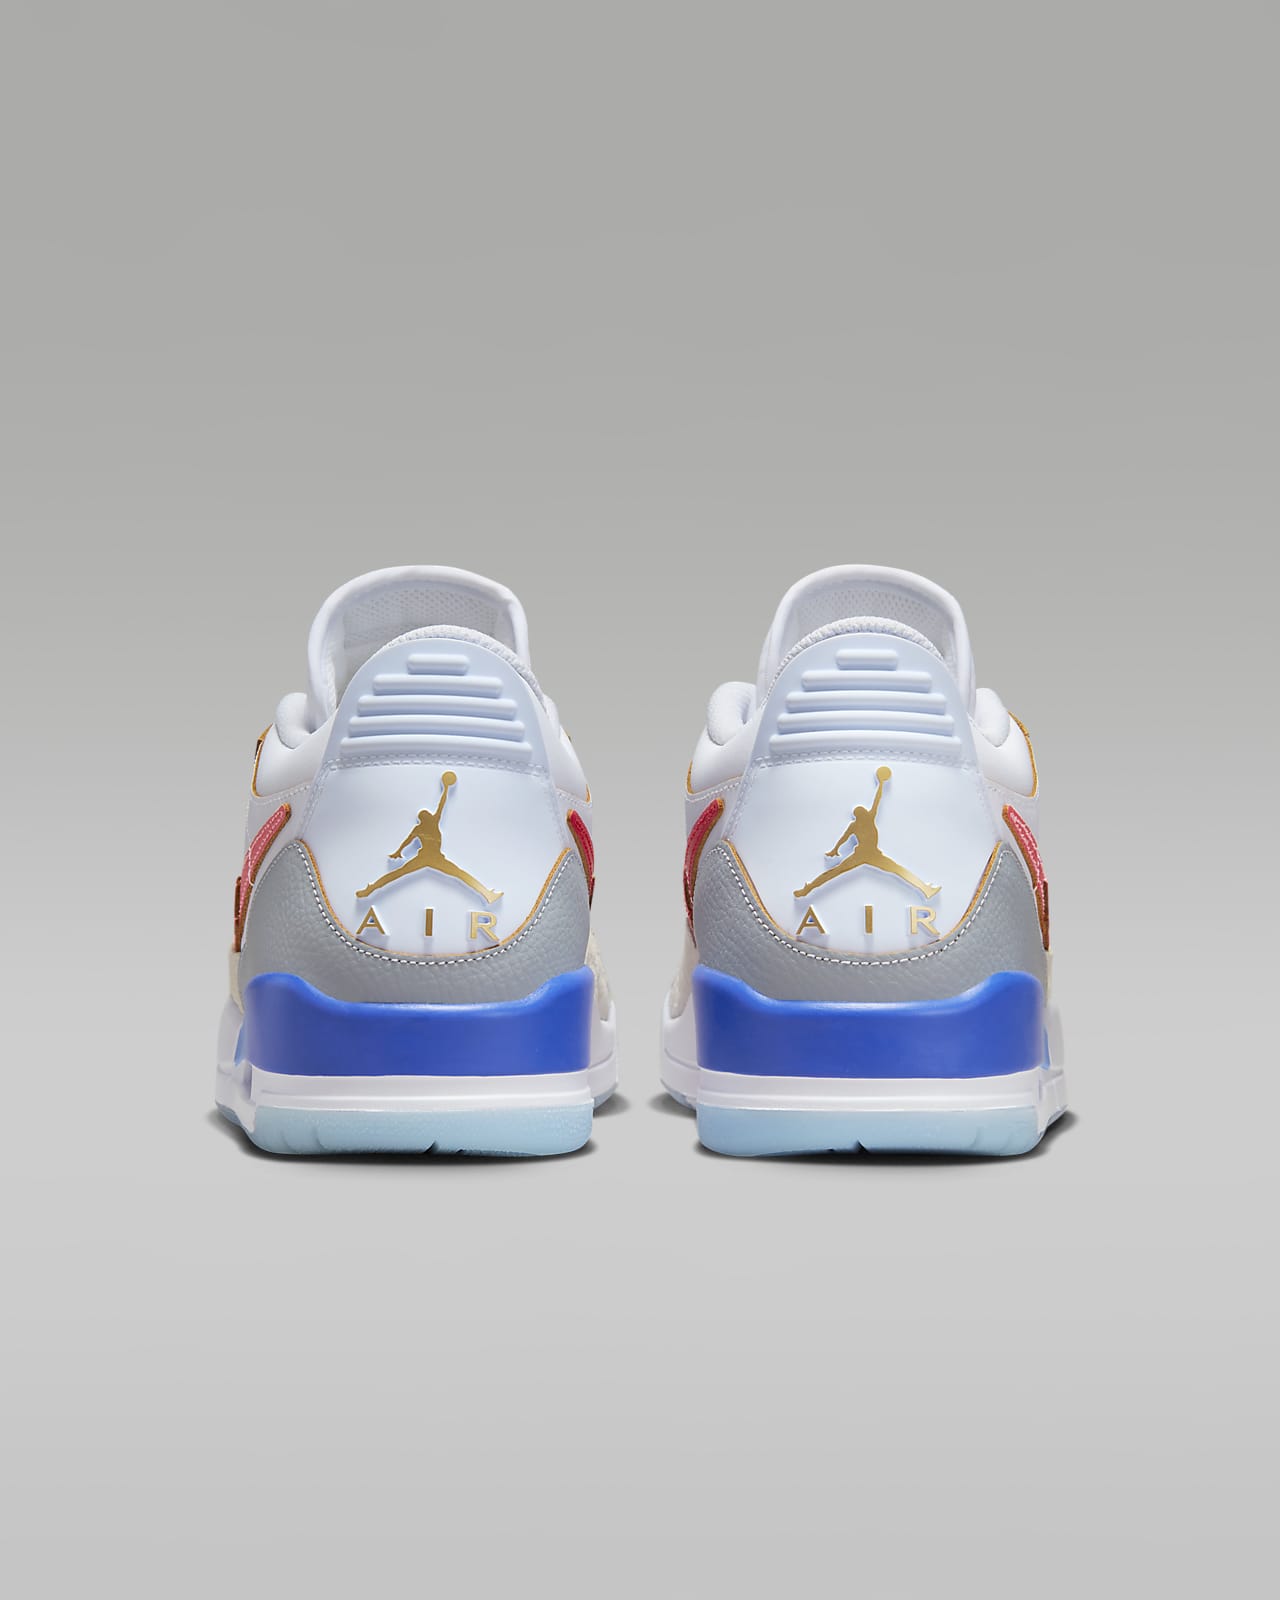 Air Jordan Legacy 312 Low Older Kids' Shoes. Nike ID